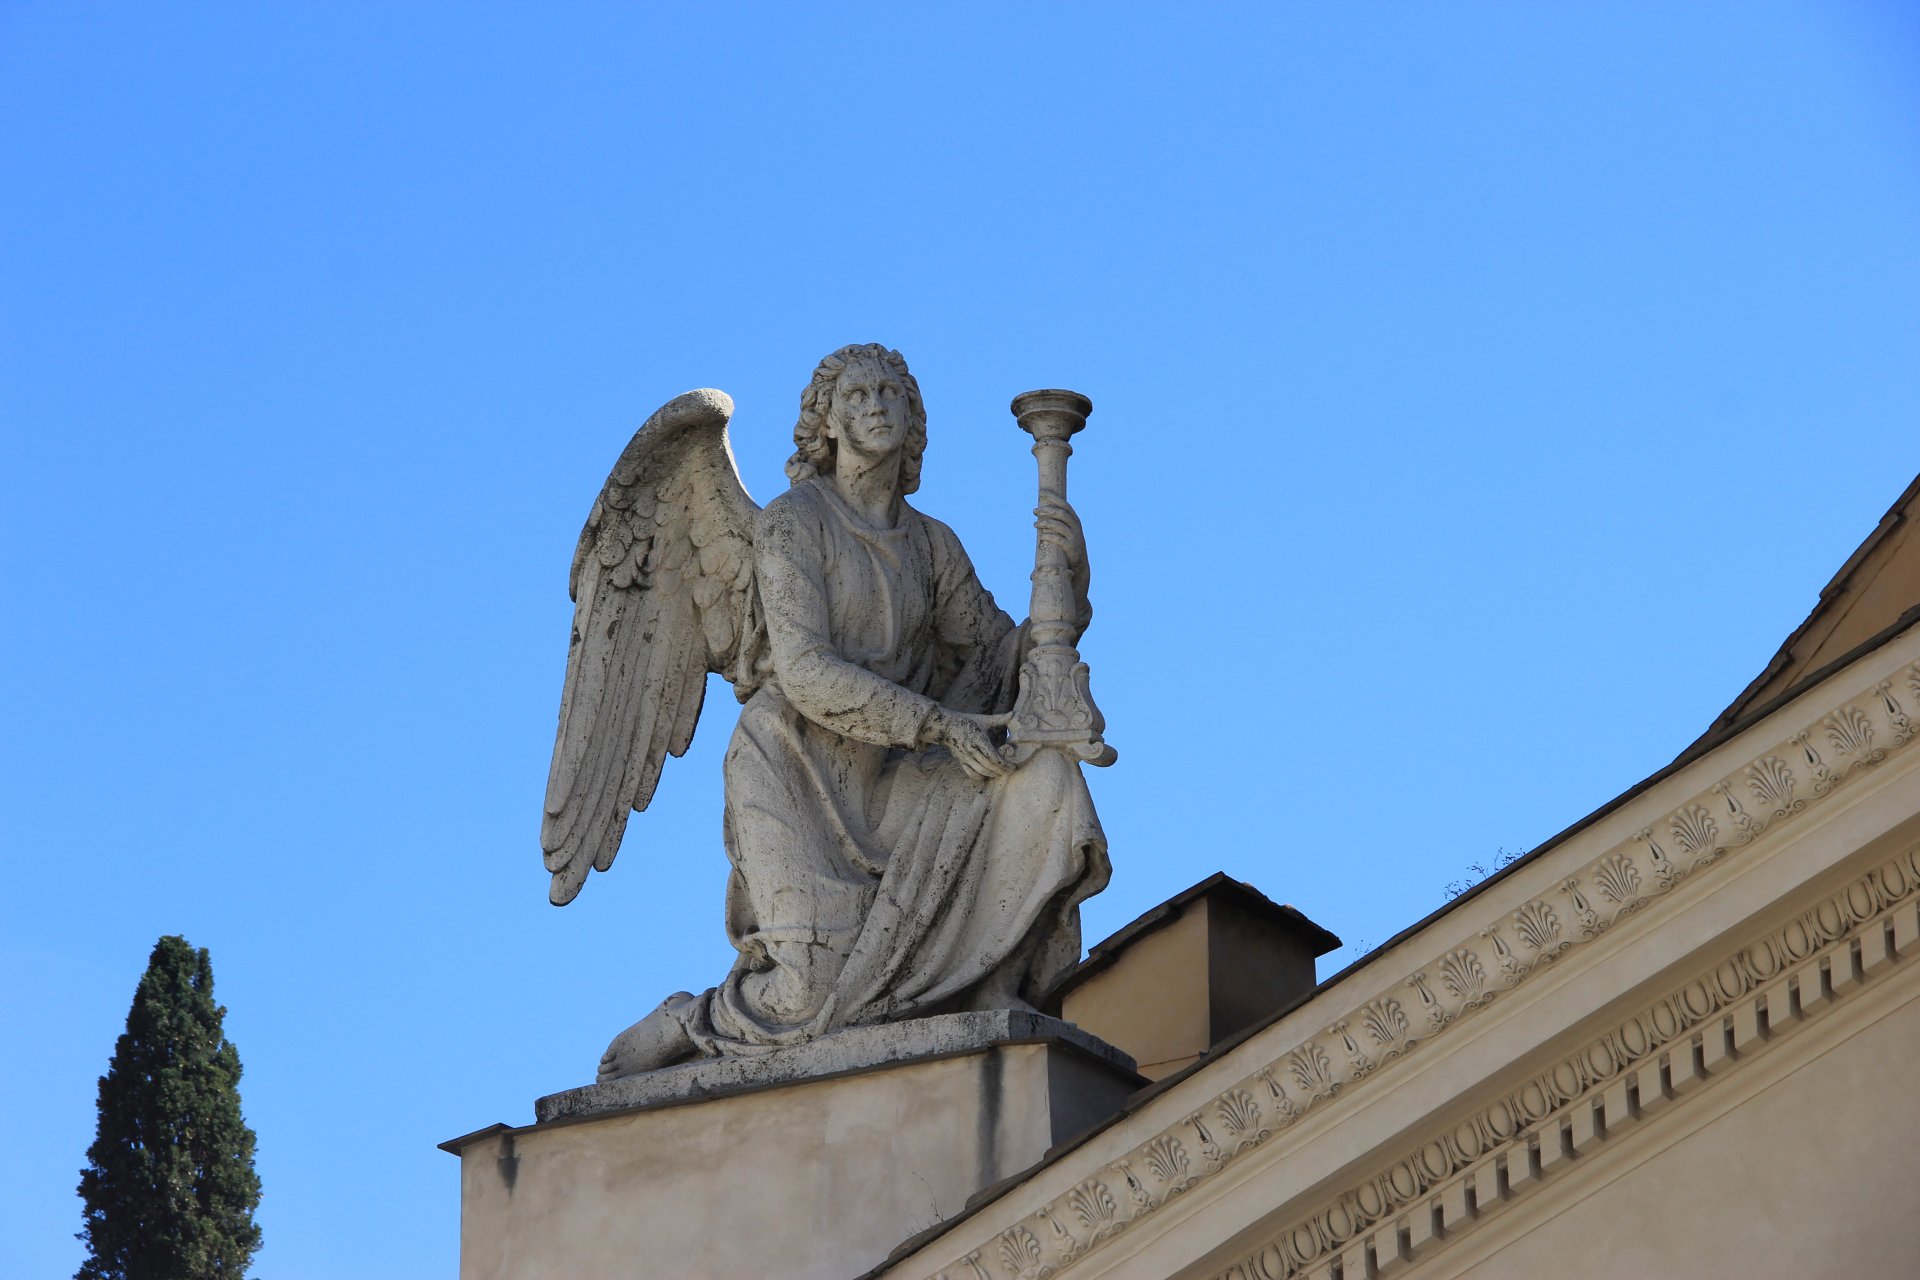 Anioł na kościele San Rocco all’Augusteo